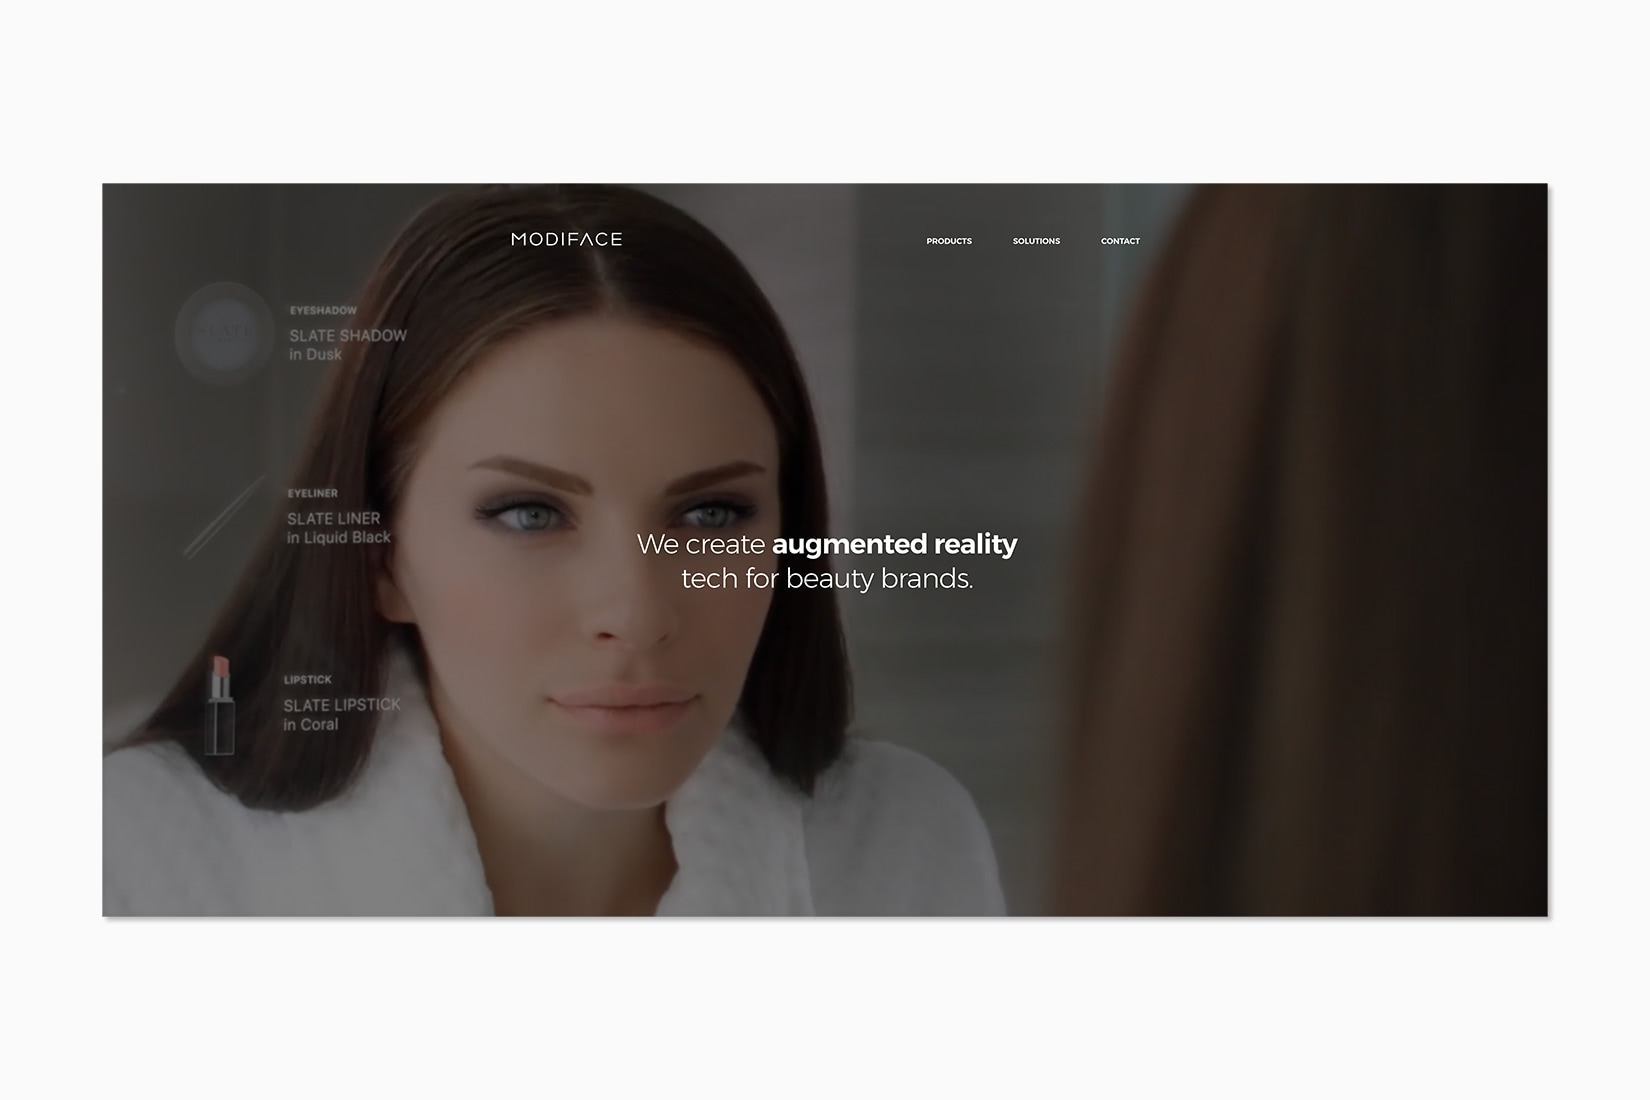 vente en ligne de produits de beauté de luxe l'oreal modiface réalité augmentée - Luxe Digital